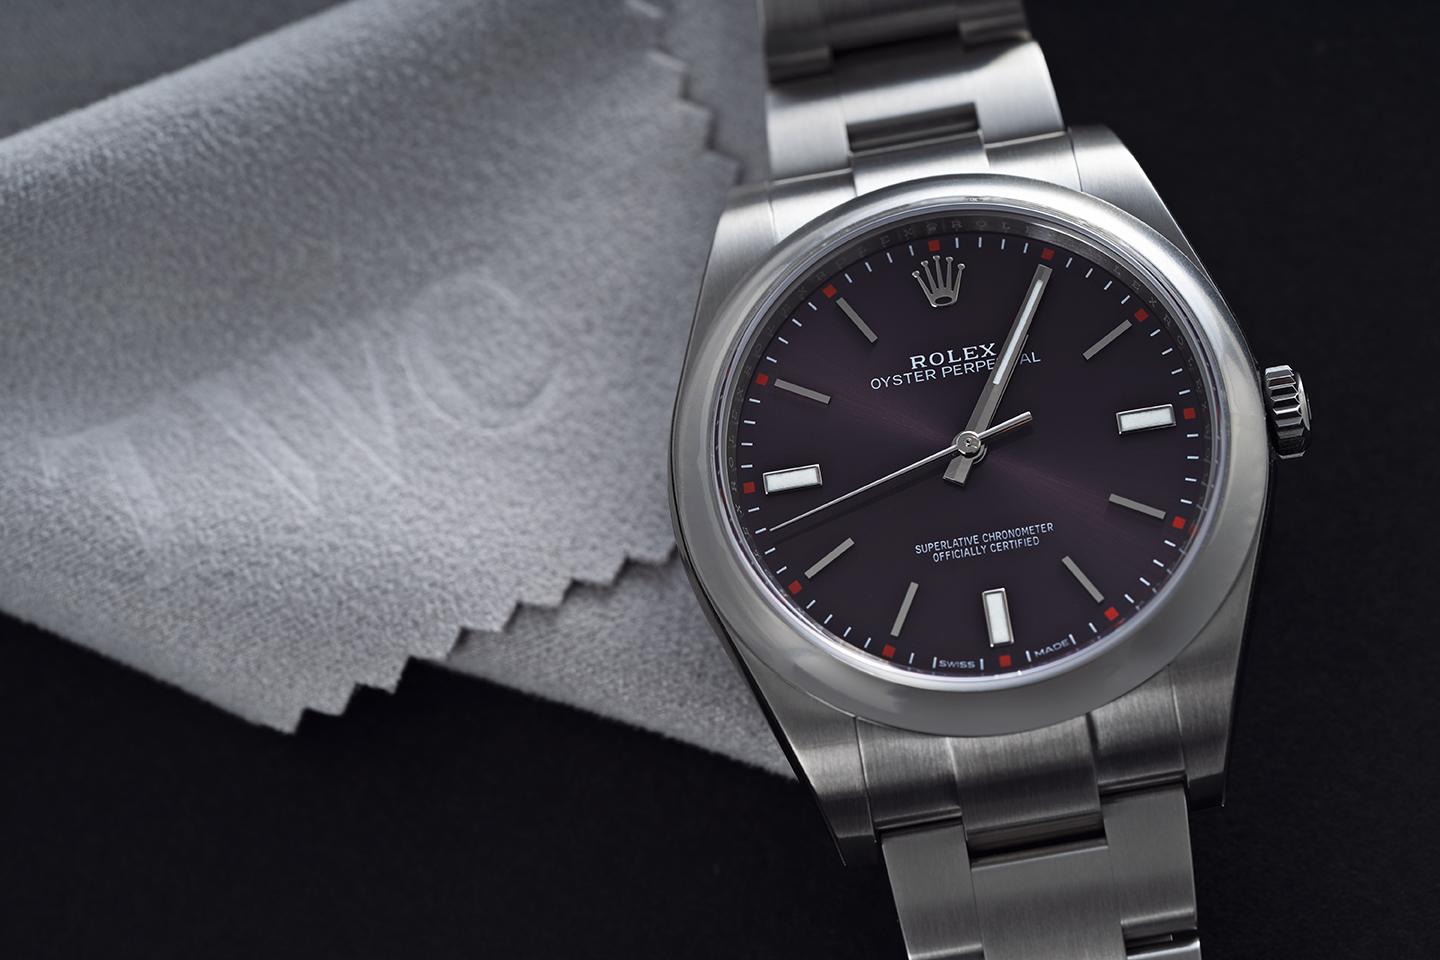 ロレックス パーペチュアル :値段を抑えた腕時計